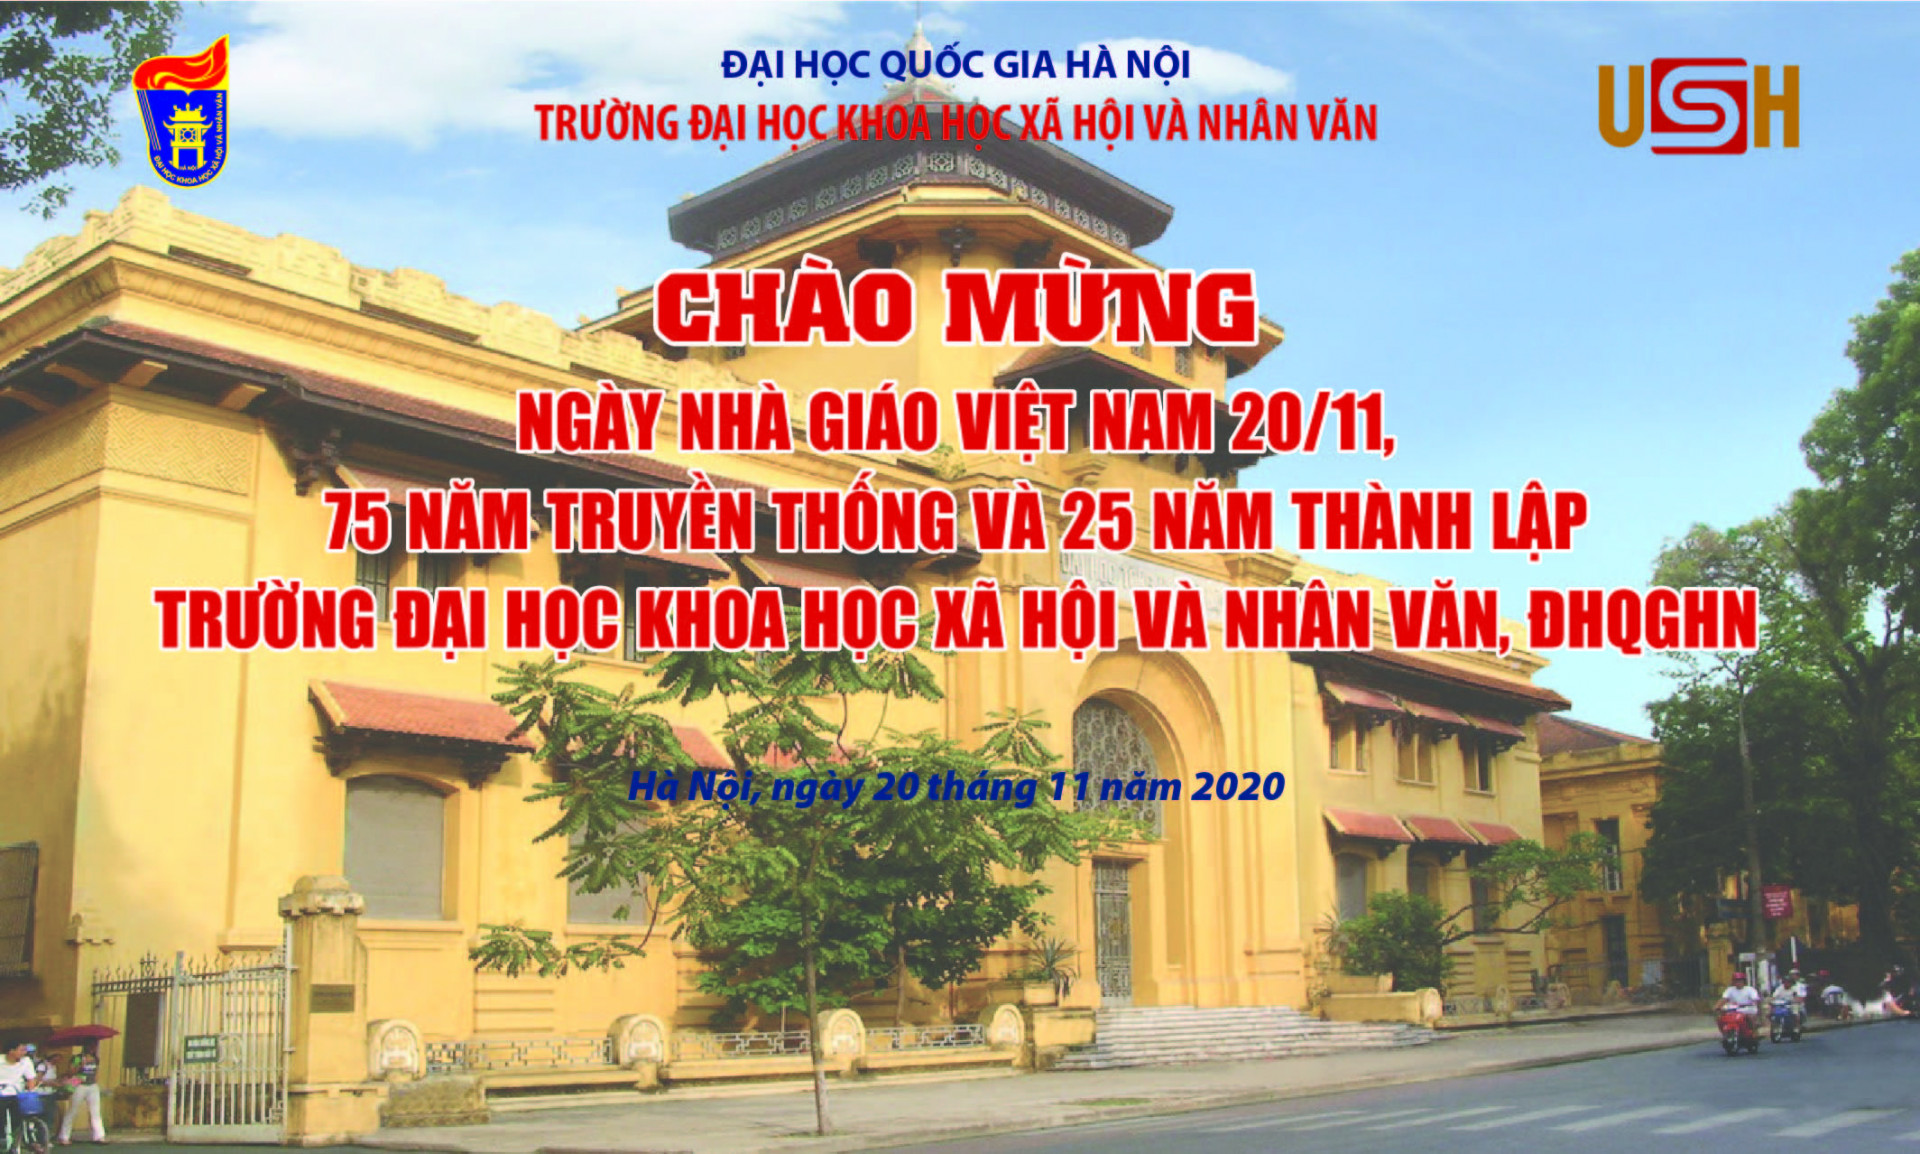 Kế hoạch giao lưu thể thao chào mừng ngày Nhà giáo Việt Nam 20-11, kỷ niệm 75 năm truyền thống và 25 năm Ngày thành lập Trường